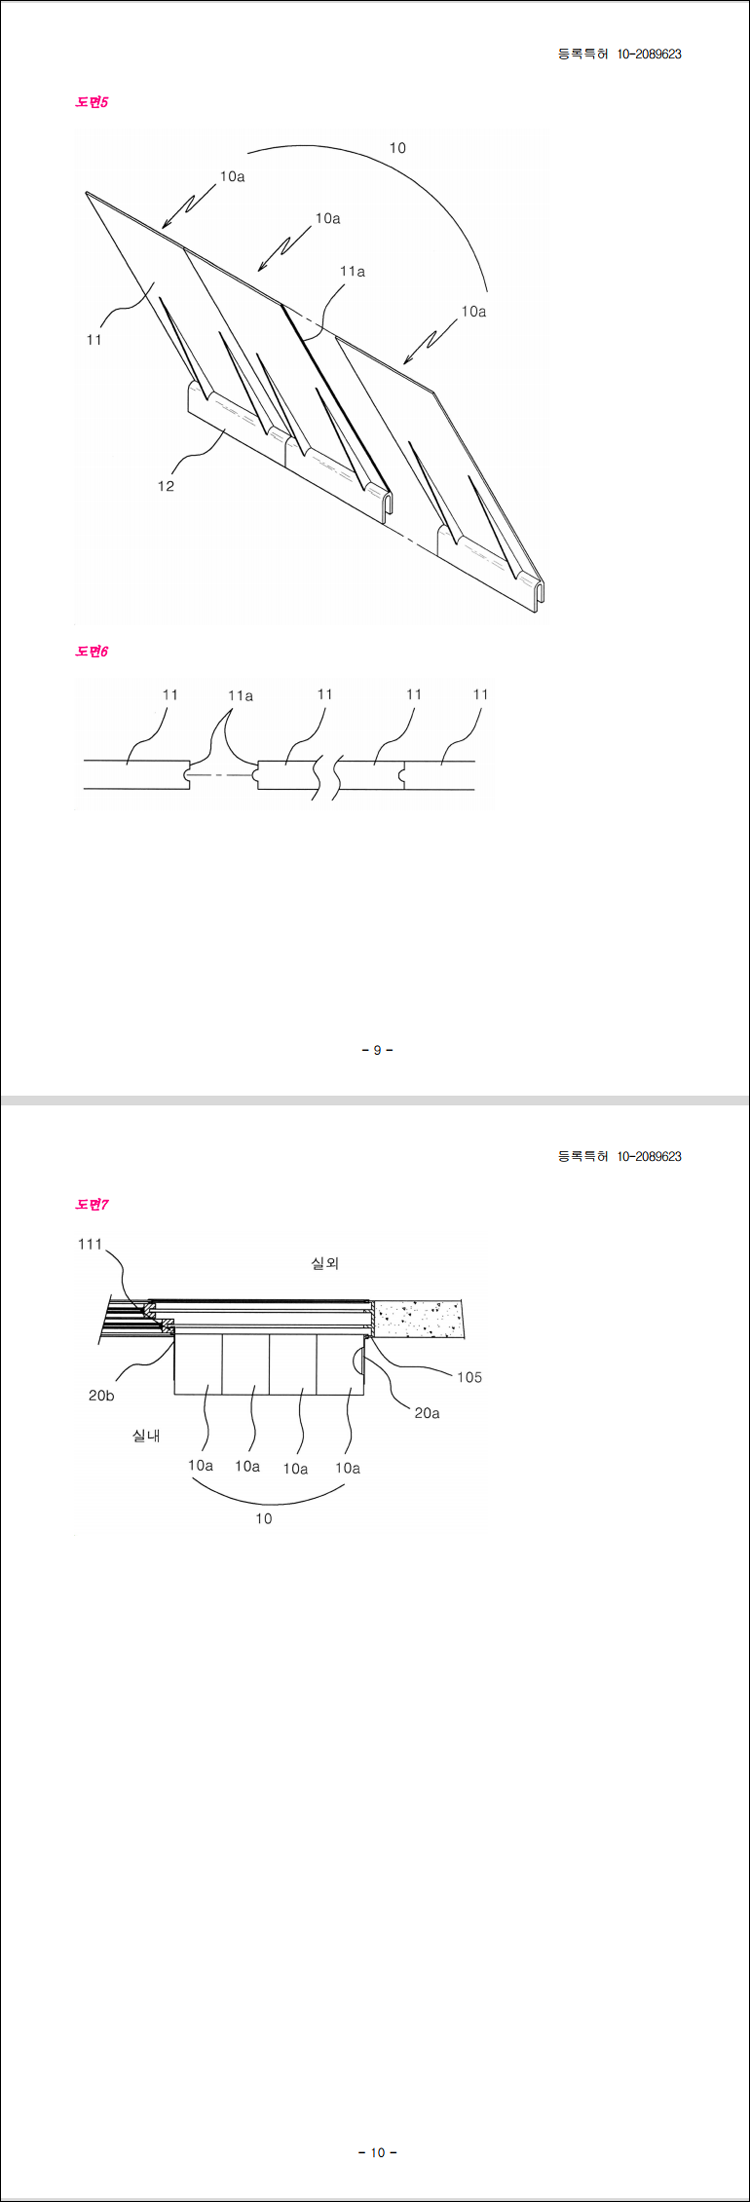 특허 제10-2089623호(창문형 빗물 차단부재, 장초아)